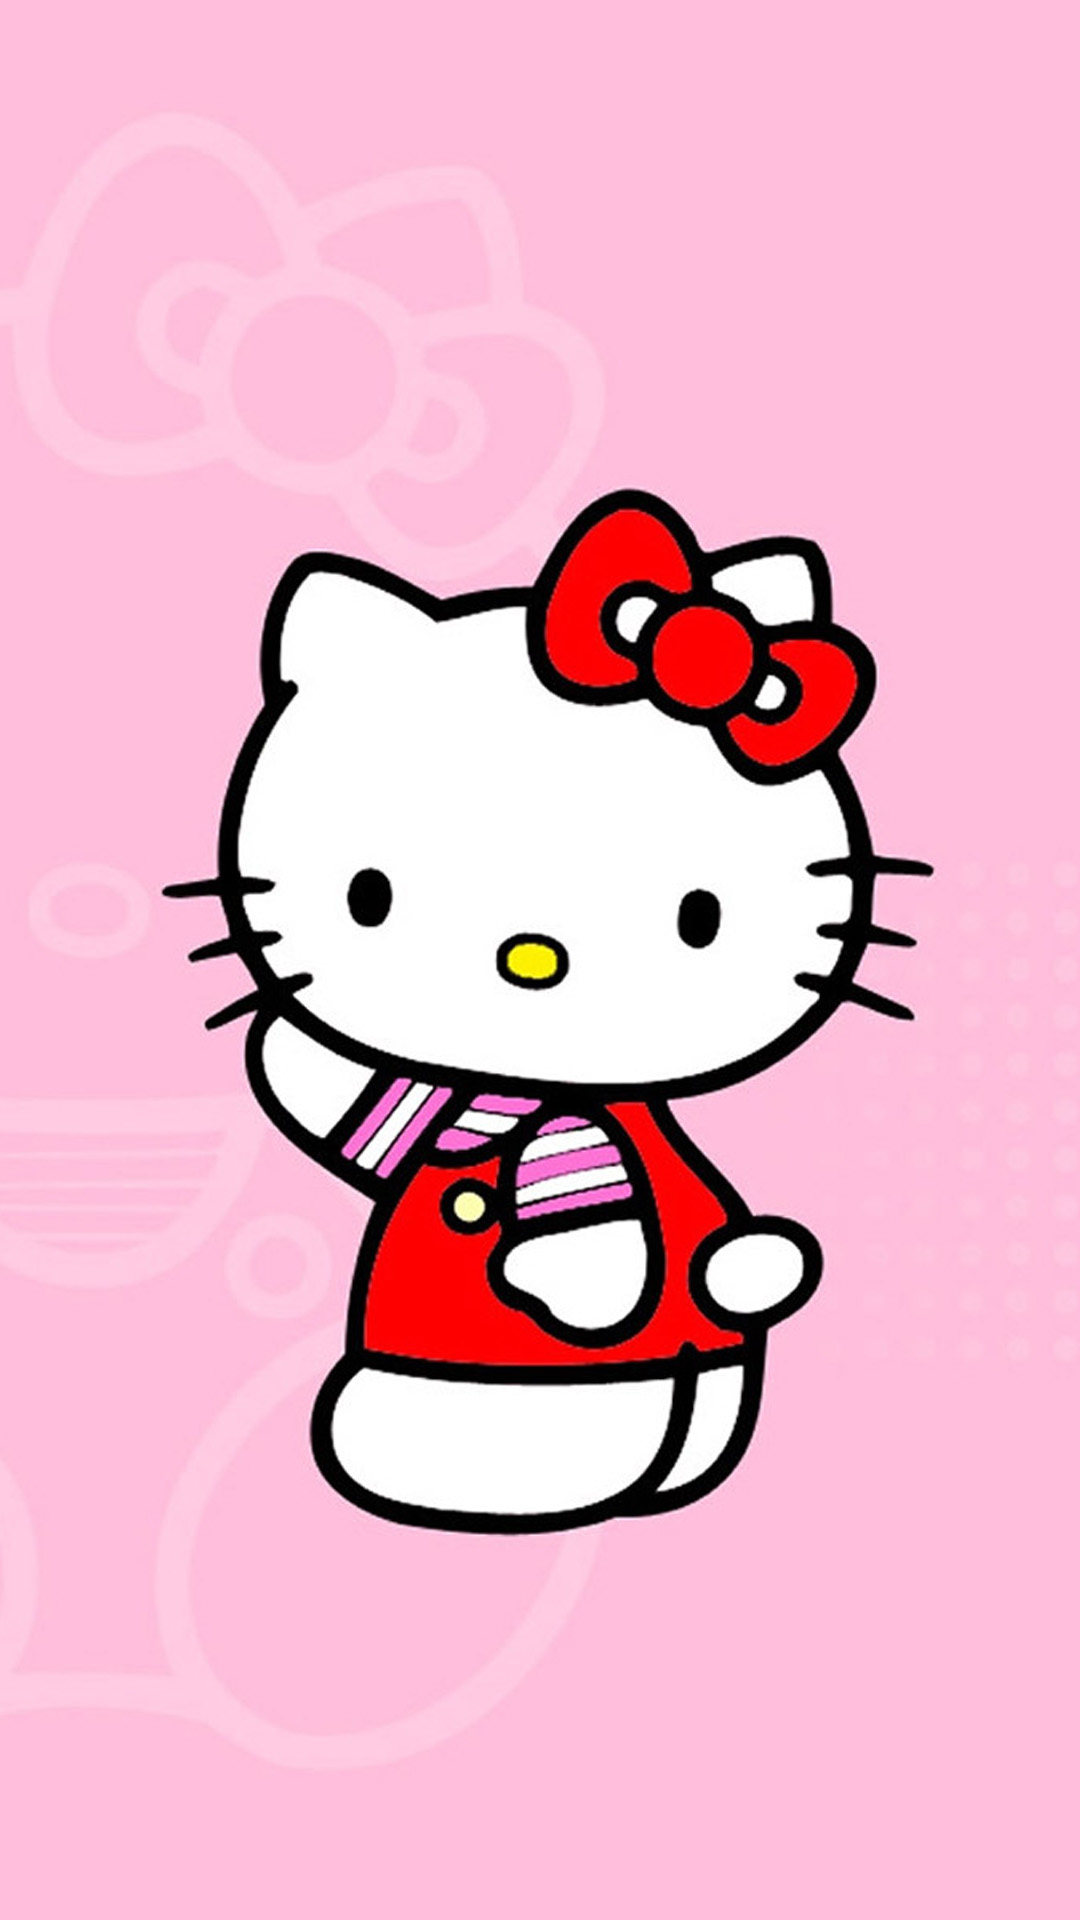 Tận hưởng sự ngọt ngào và đáng yêu của chú mèo Hello Kitty với bộ sưu tập hình nền dành riêng cho bạn. Cùng bộ sưu tập này, bạn sẽ có thể tạo nên không gian nghỉ ngơi tràn đầy cảm xúc ngọt ngào và đáng yêu.